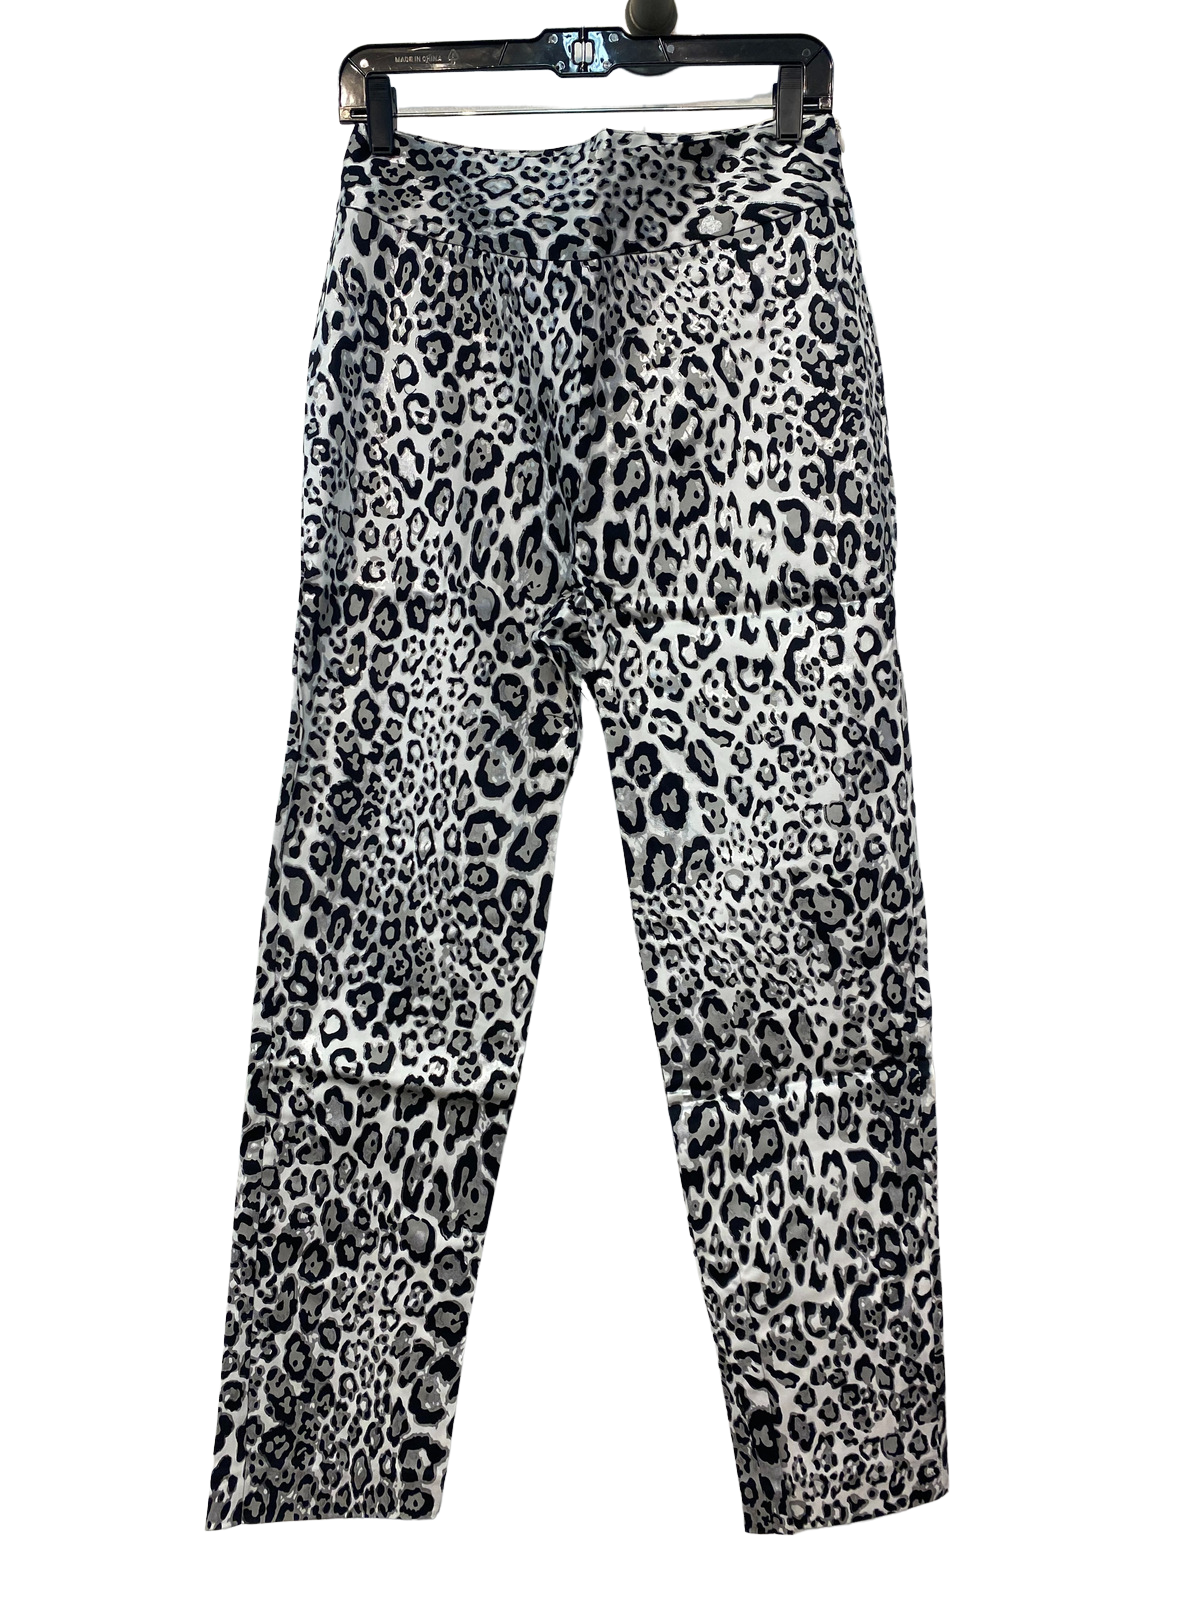 Stylin Leopard Pants